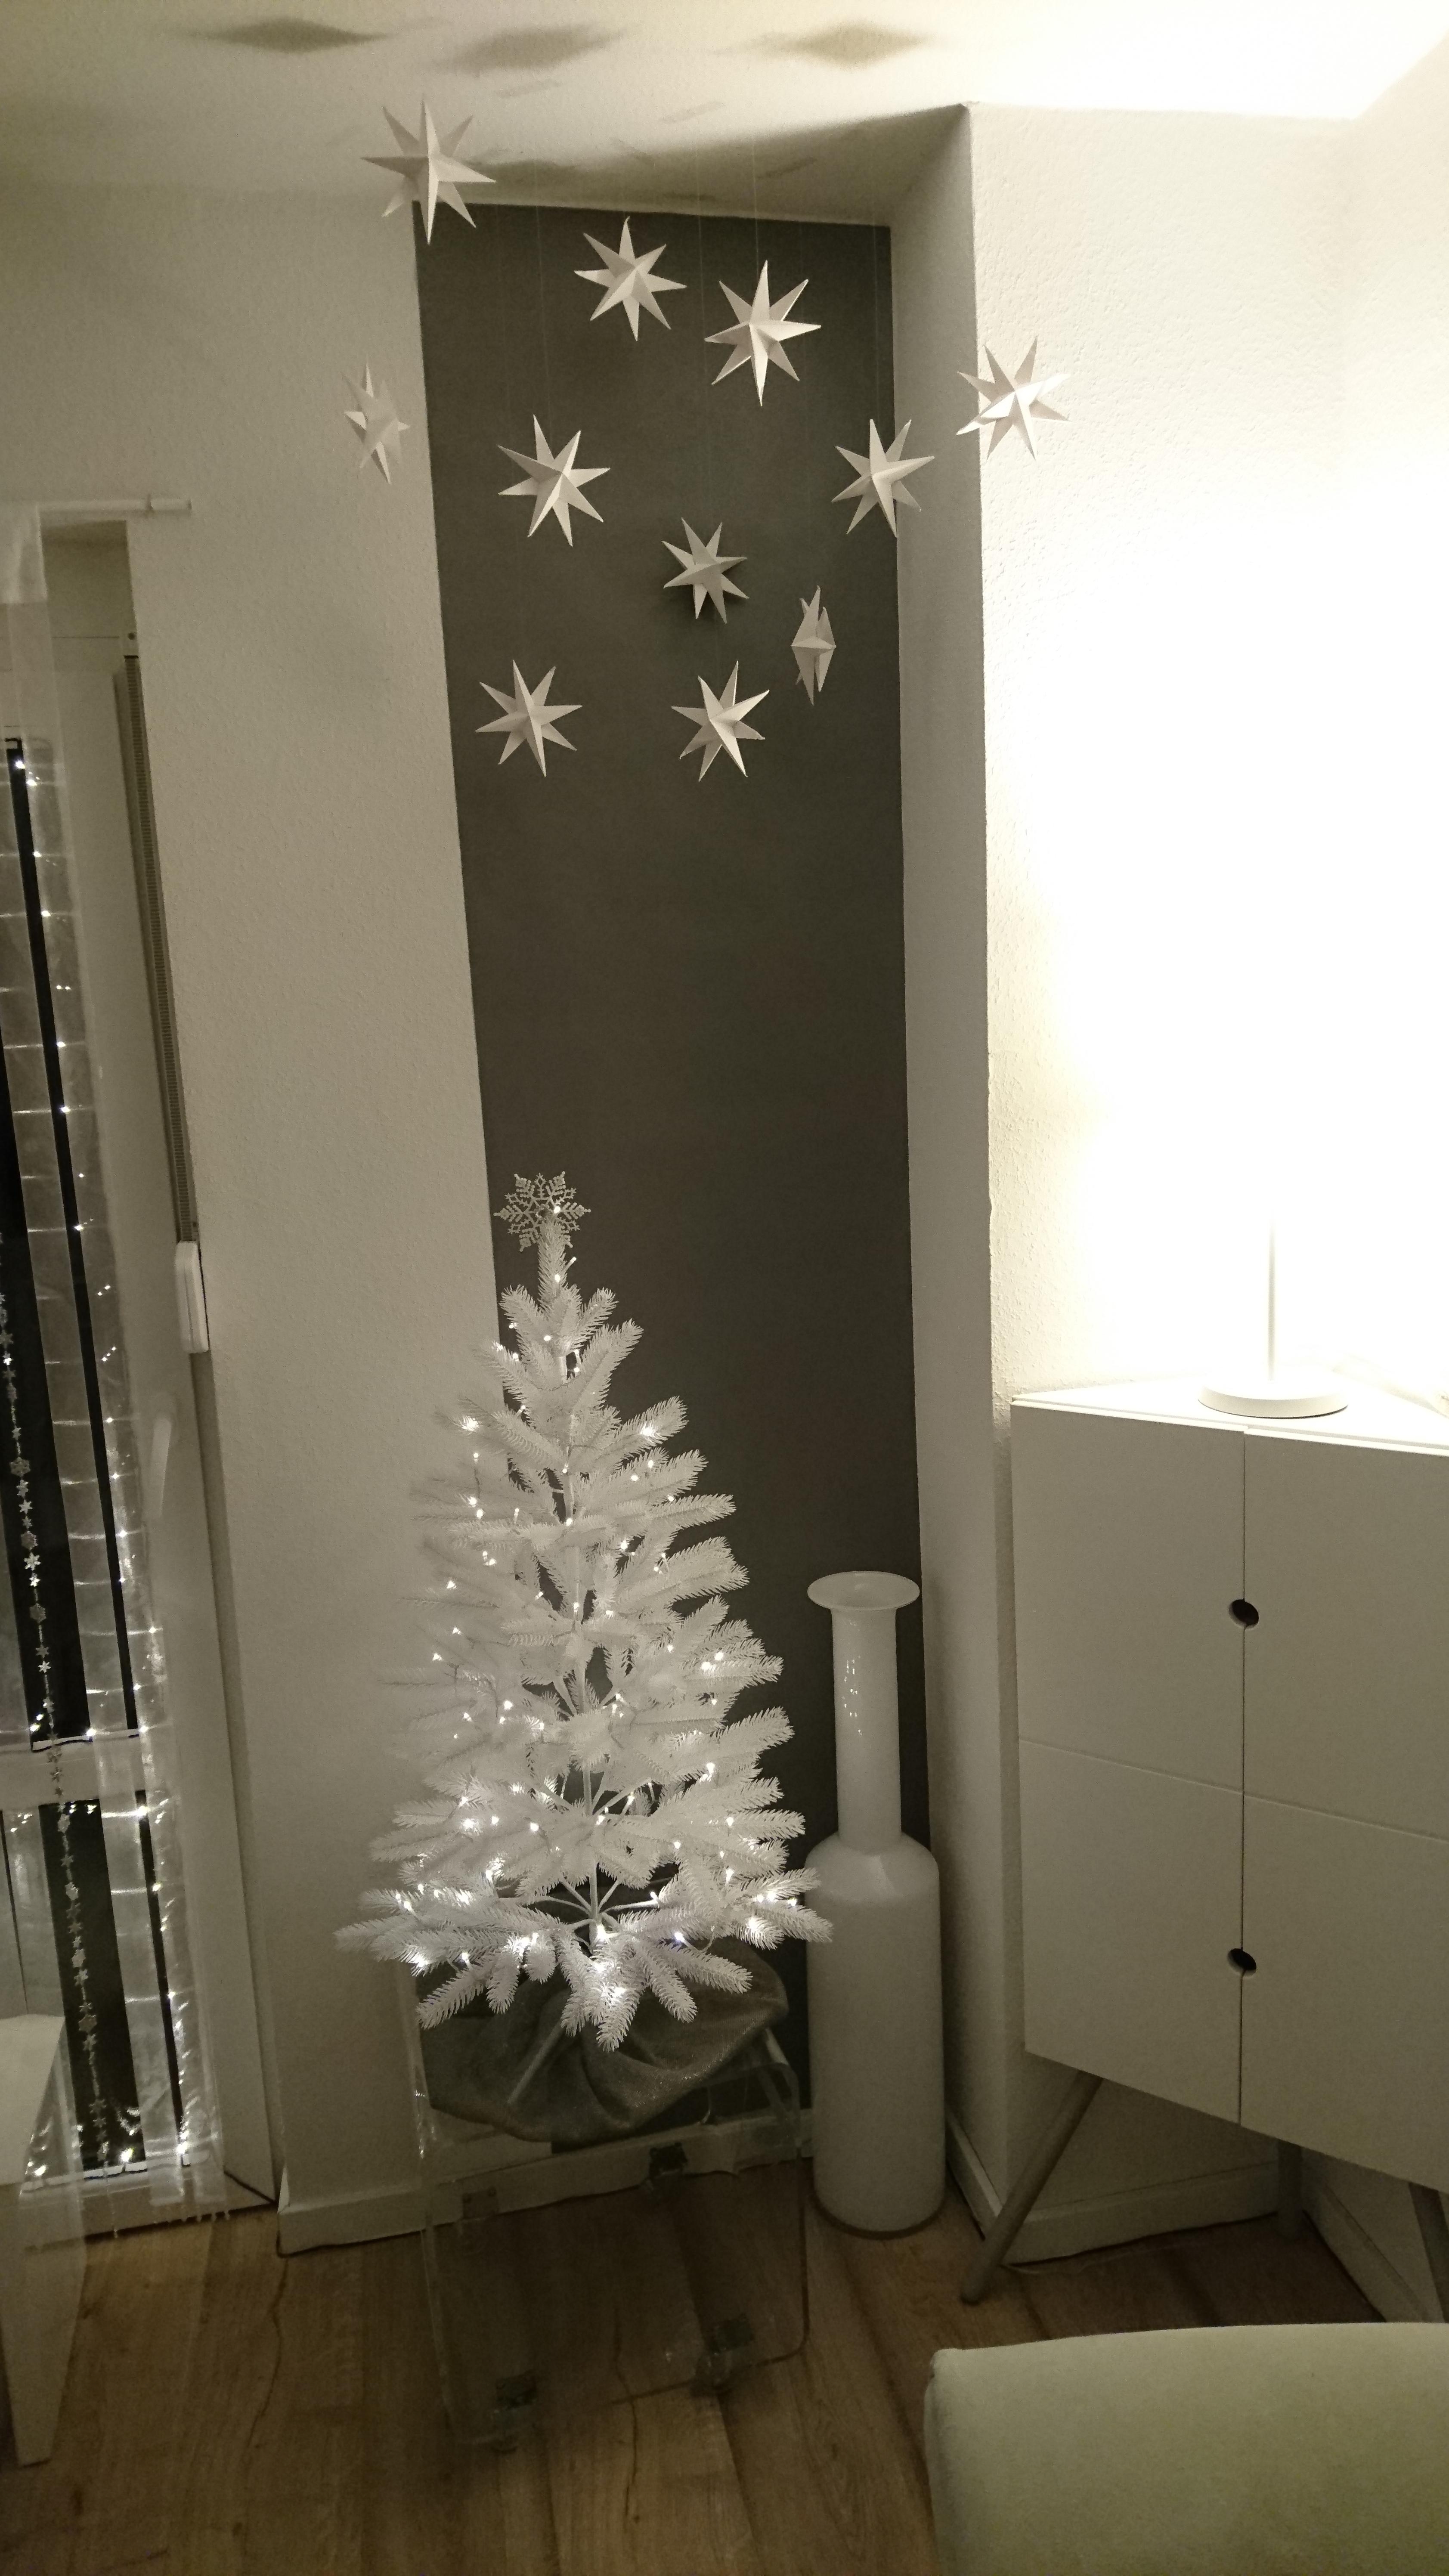 #Weiße Weihnachten #Weihnachten #Weihnachtsdeko #DIY #Origami #Sterne